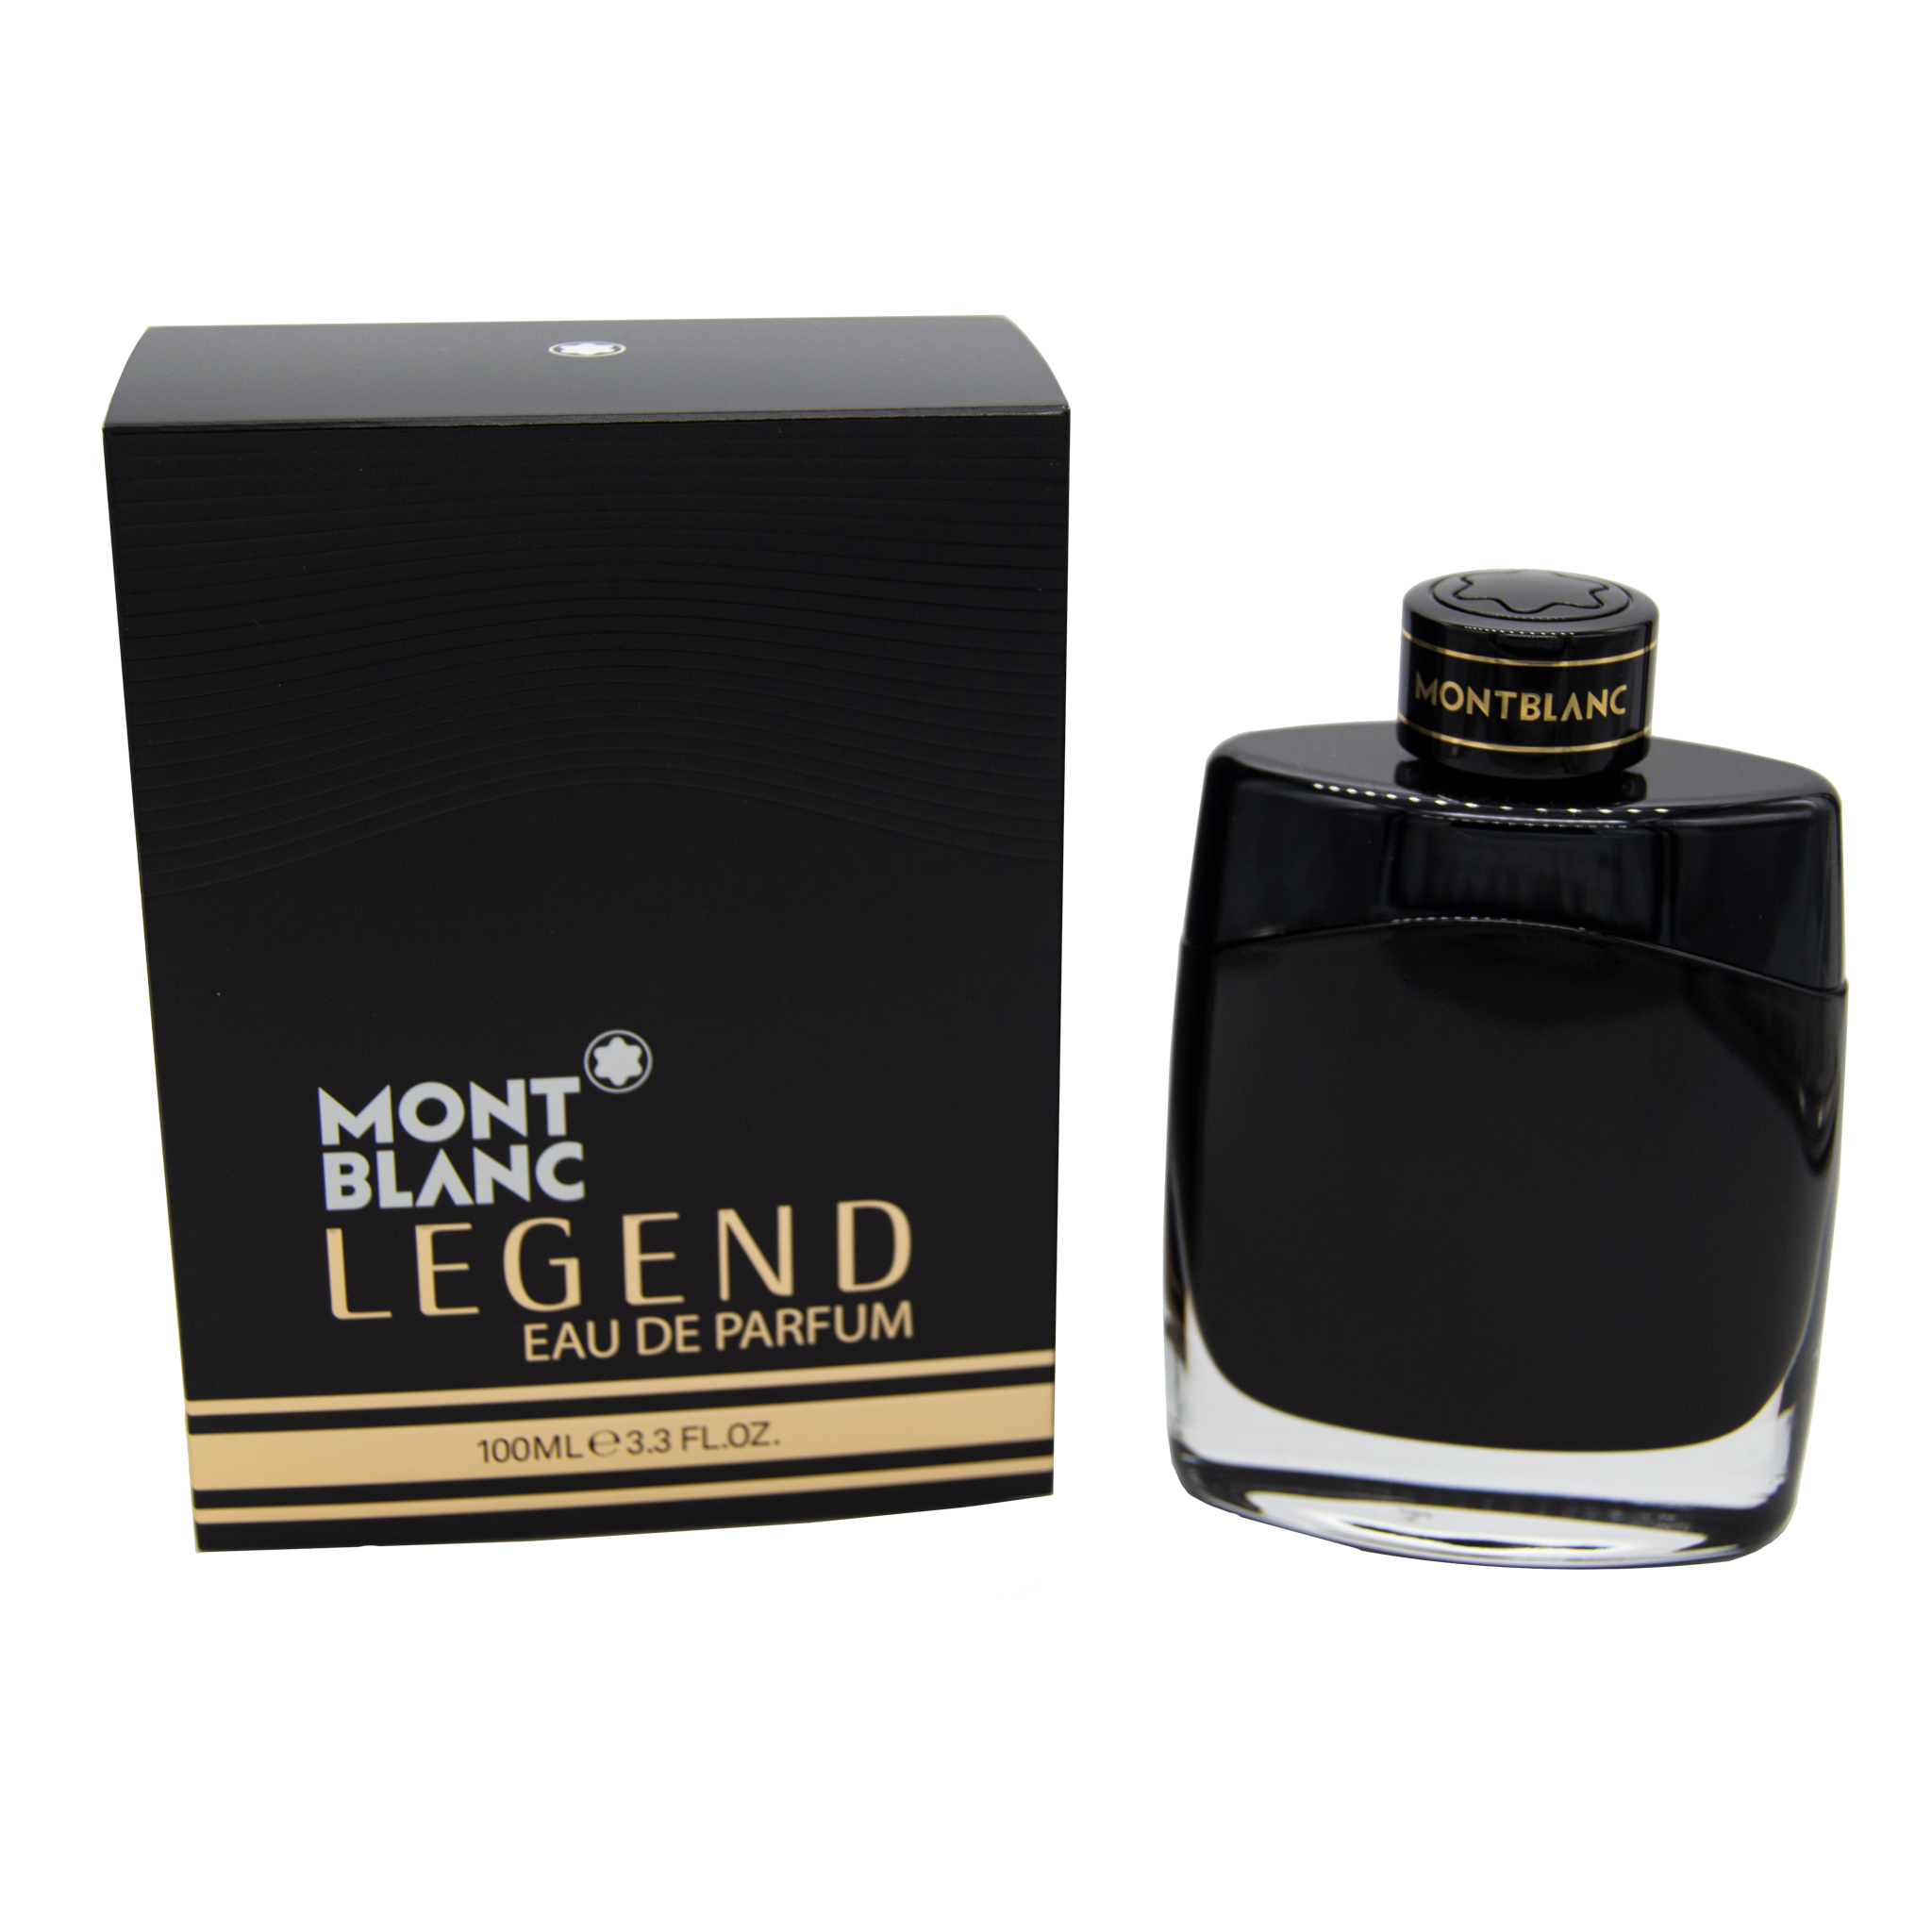 Eau – Essence Fragrances de Legend Online Parfum Montblanc